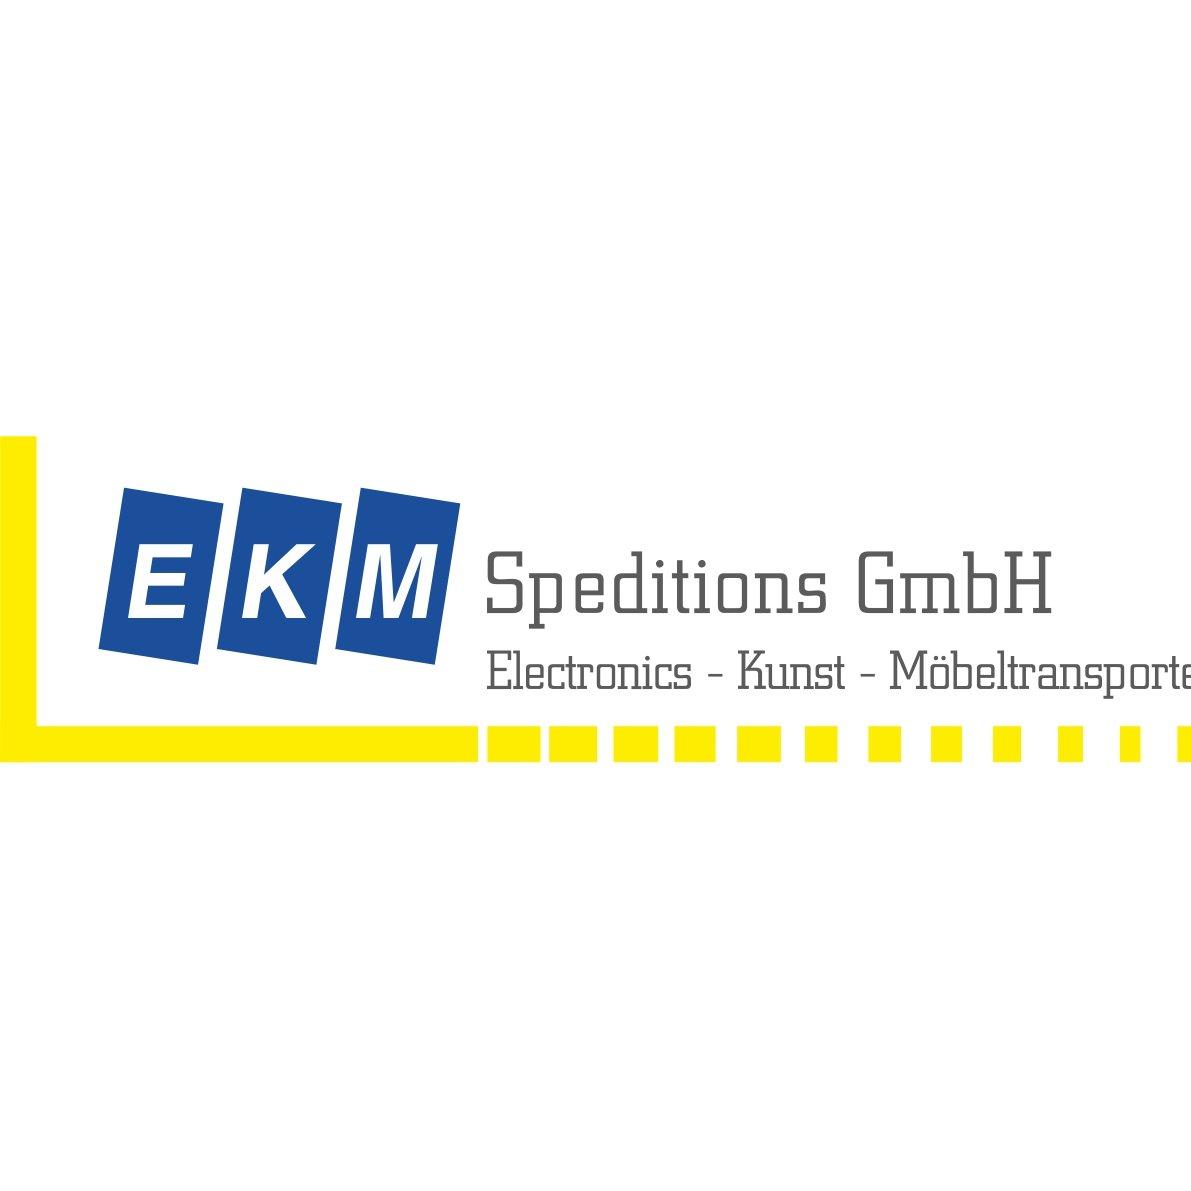 EKM Speditions GmbH Electronics Kunst Möbeltransporte in Graz